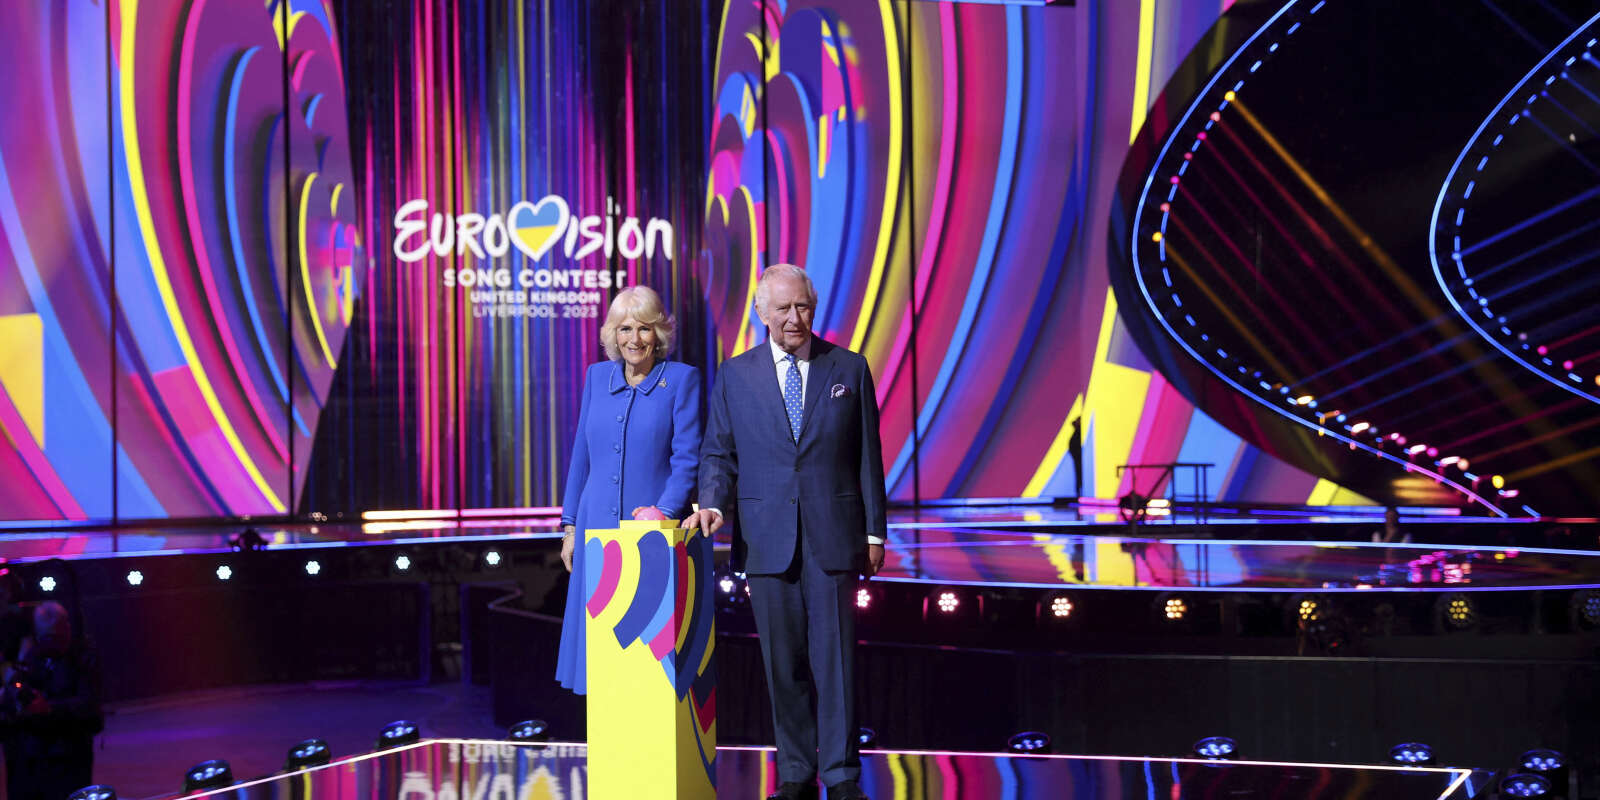 Le roi Charles III et Camilla, la reine consort, allument l’éclairage de la scène alors qu’ils visitent le lieu d’accueil du concours Eurovision de la chanson de cette année, le M&S Bank Arena à Liverpool, en Angleterre, mercredi 26 avril 2023.